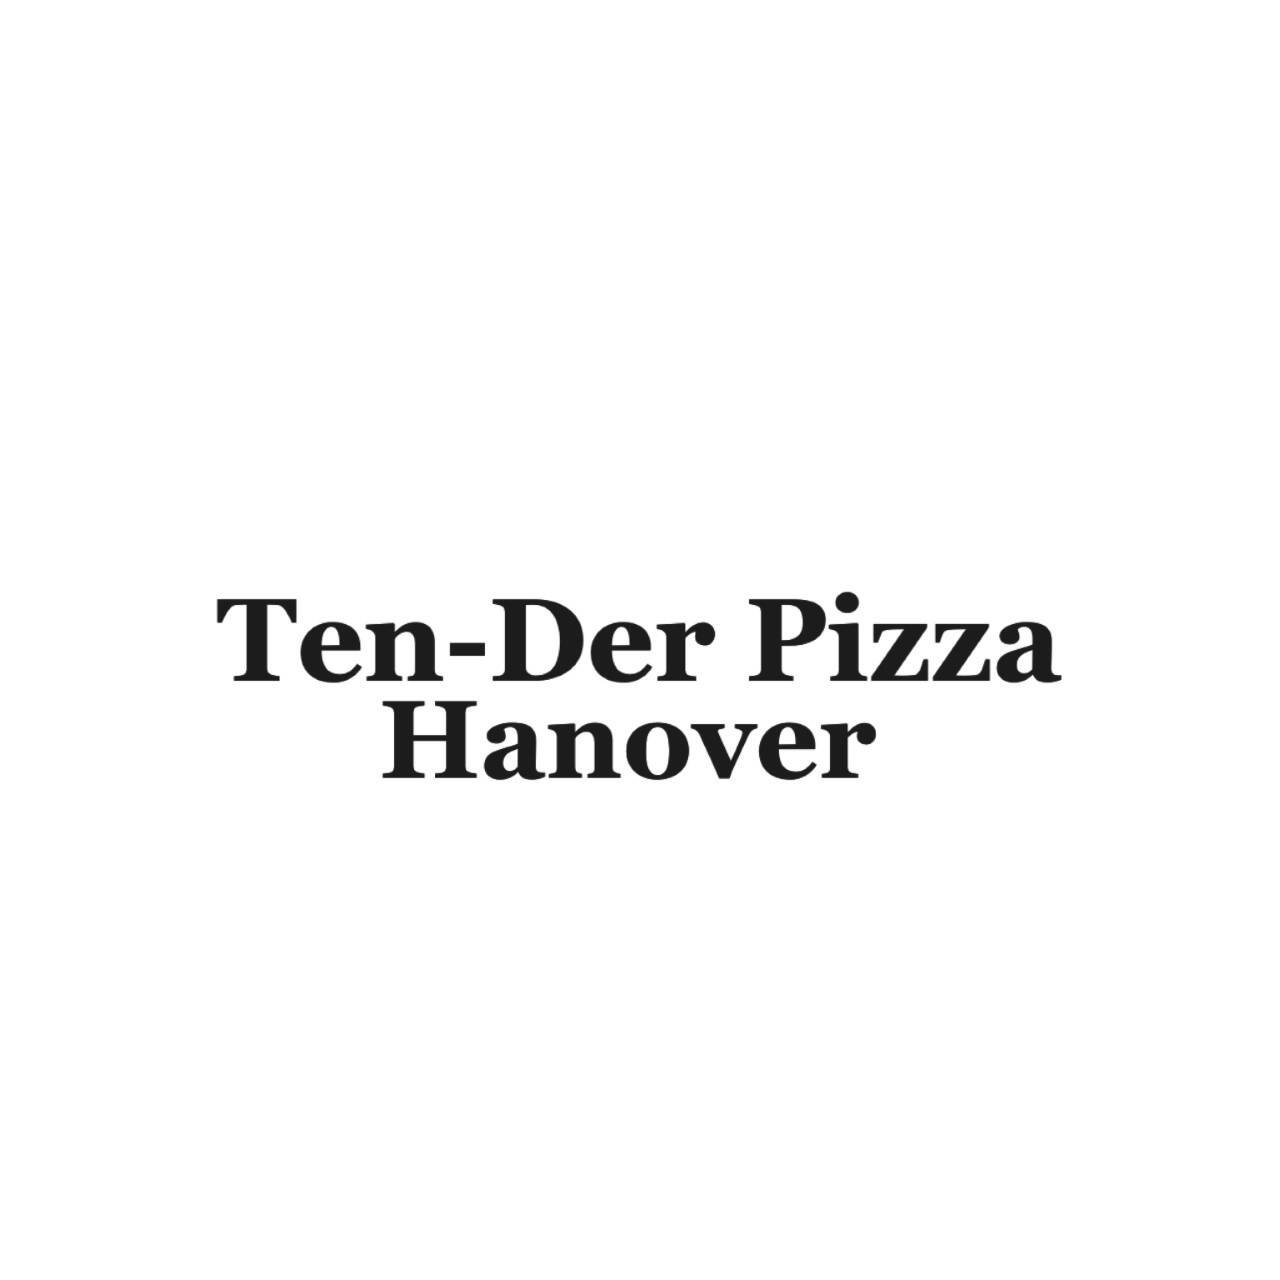 TEN-DER PIZZA